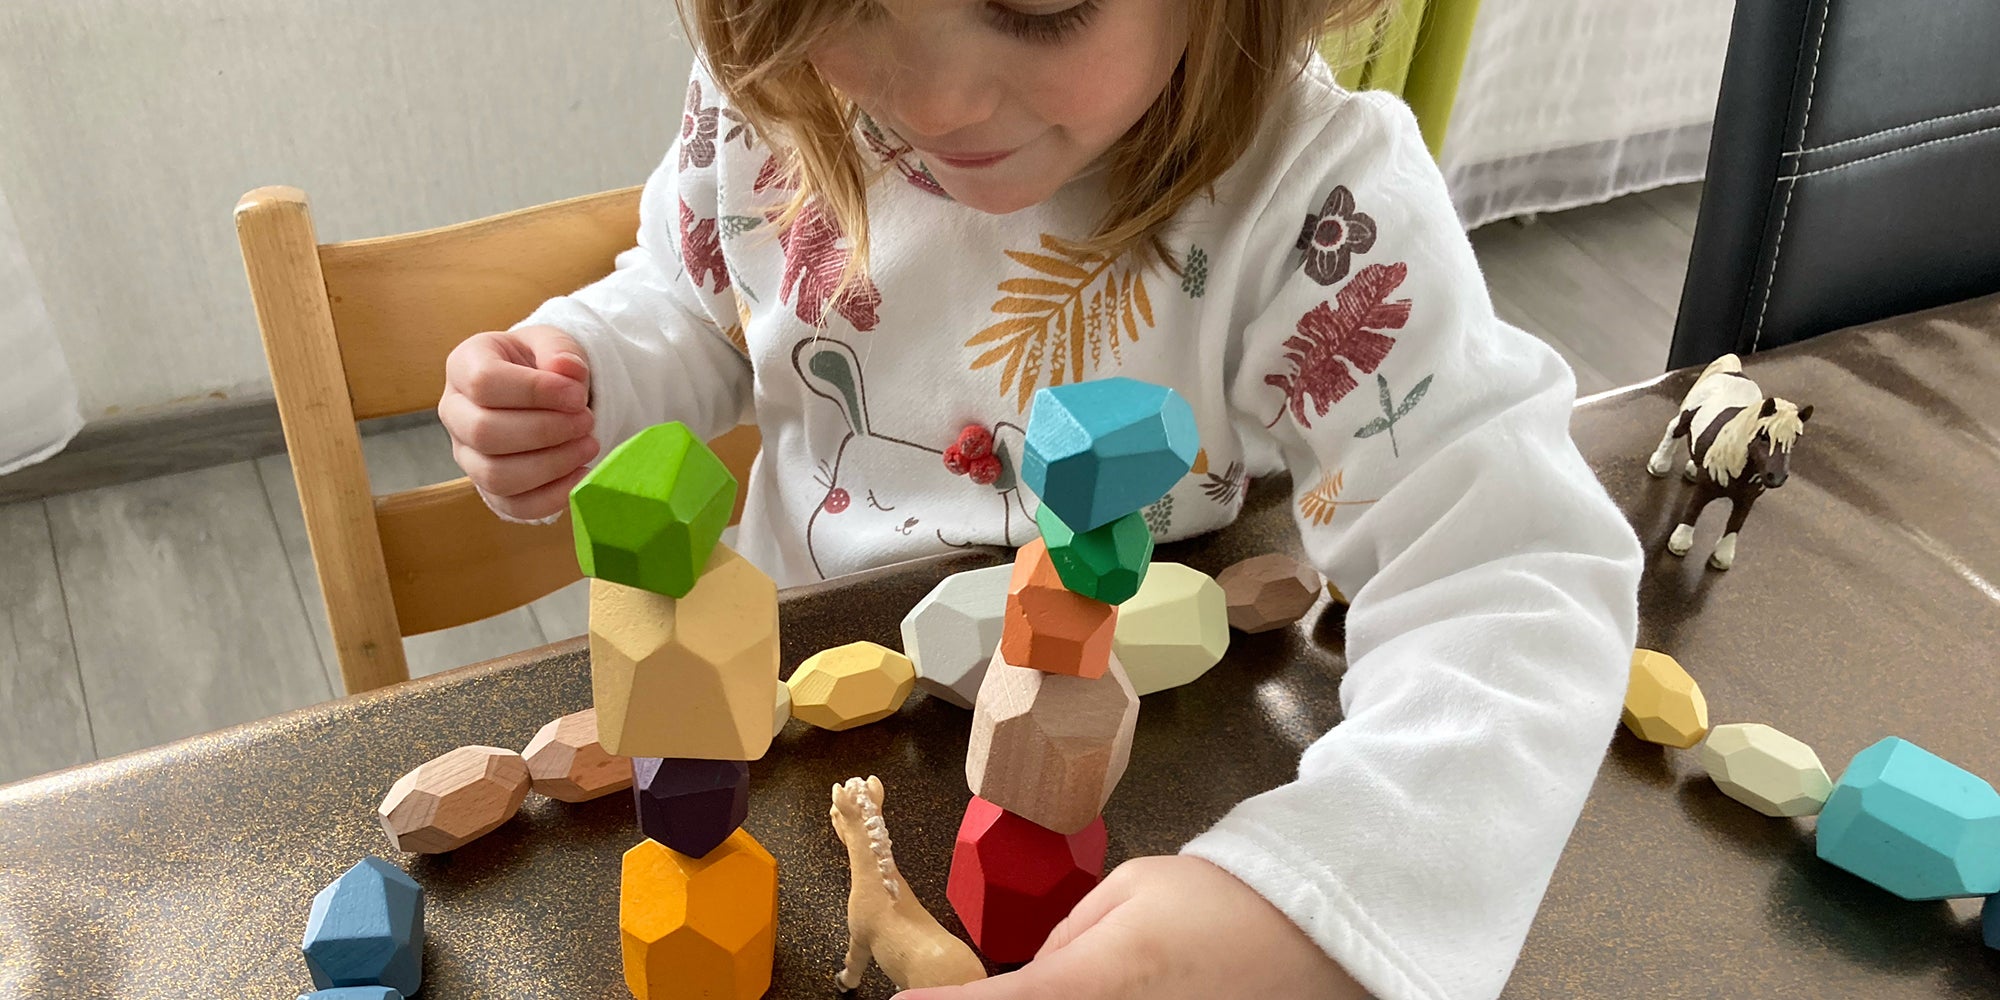 Petit Menhir / Le jeu éducatif en bois qui éveille les enfants - UNE MINUTE  DE BEAUTE